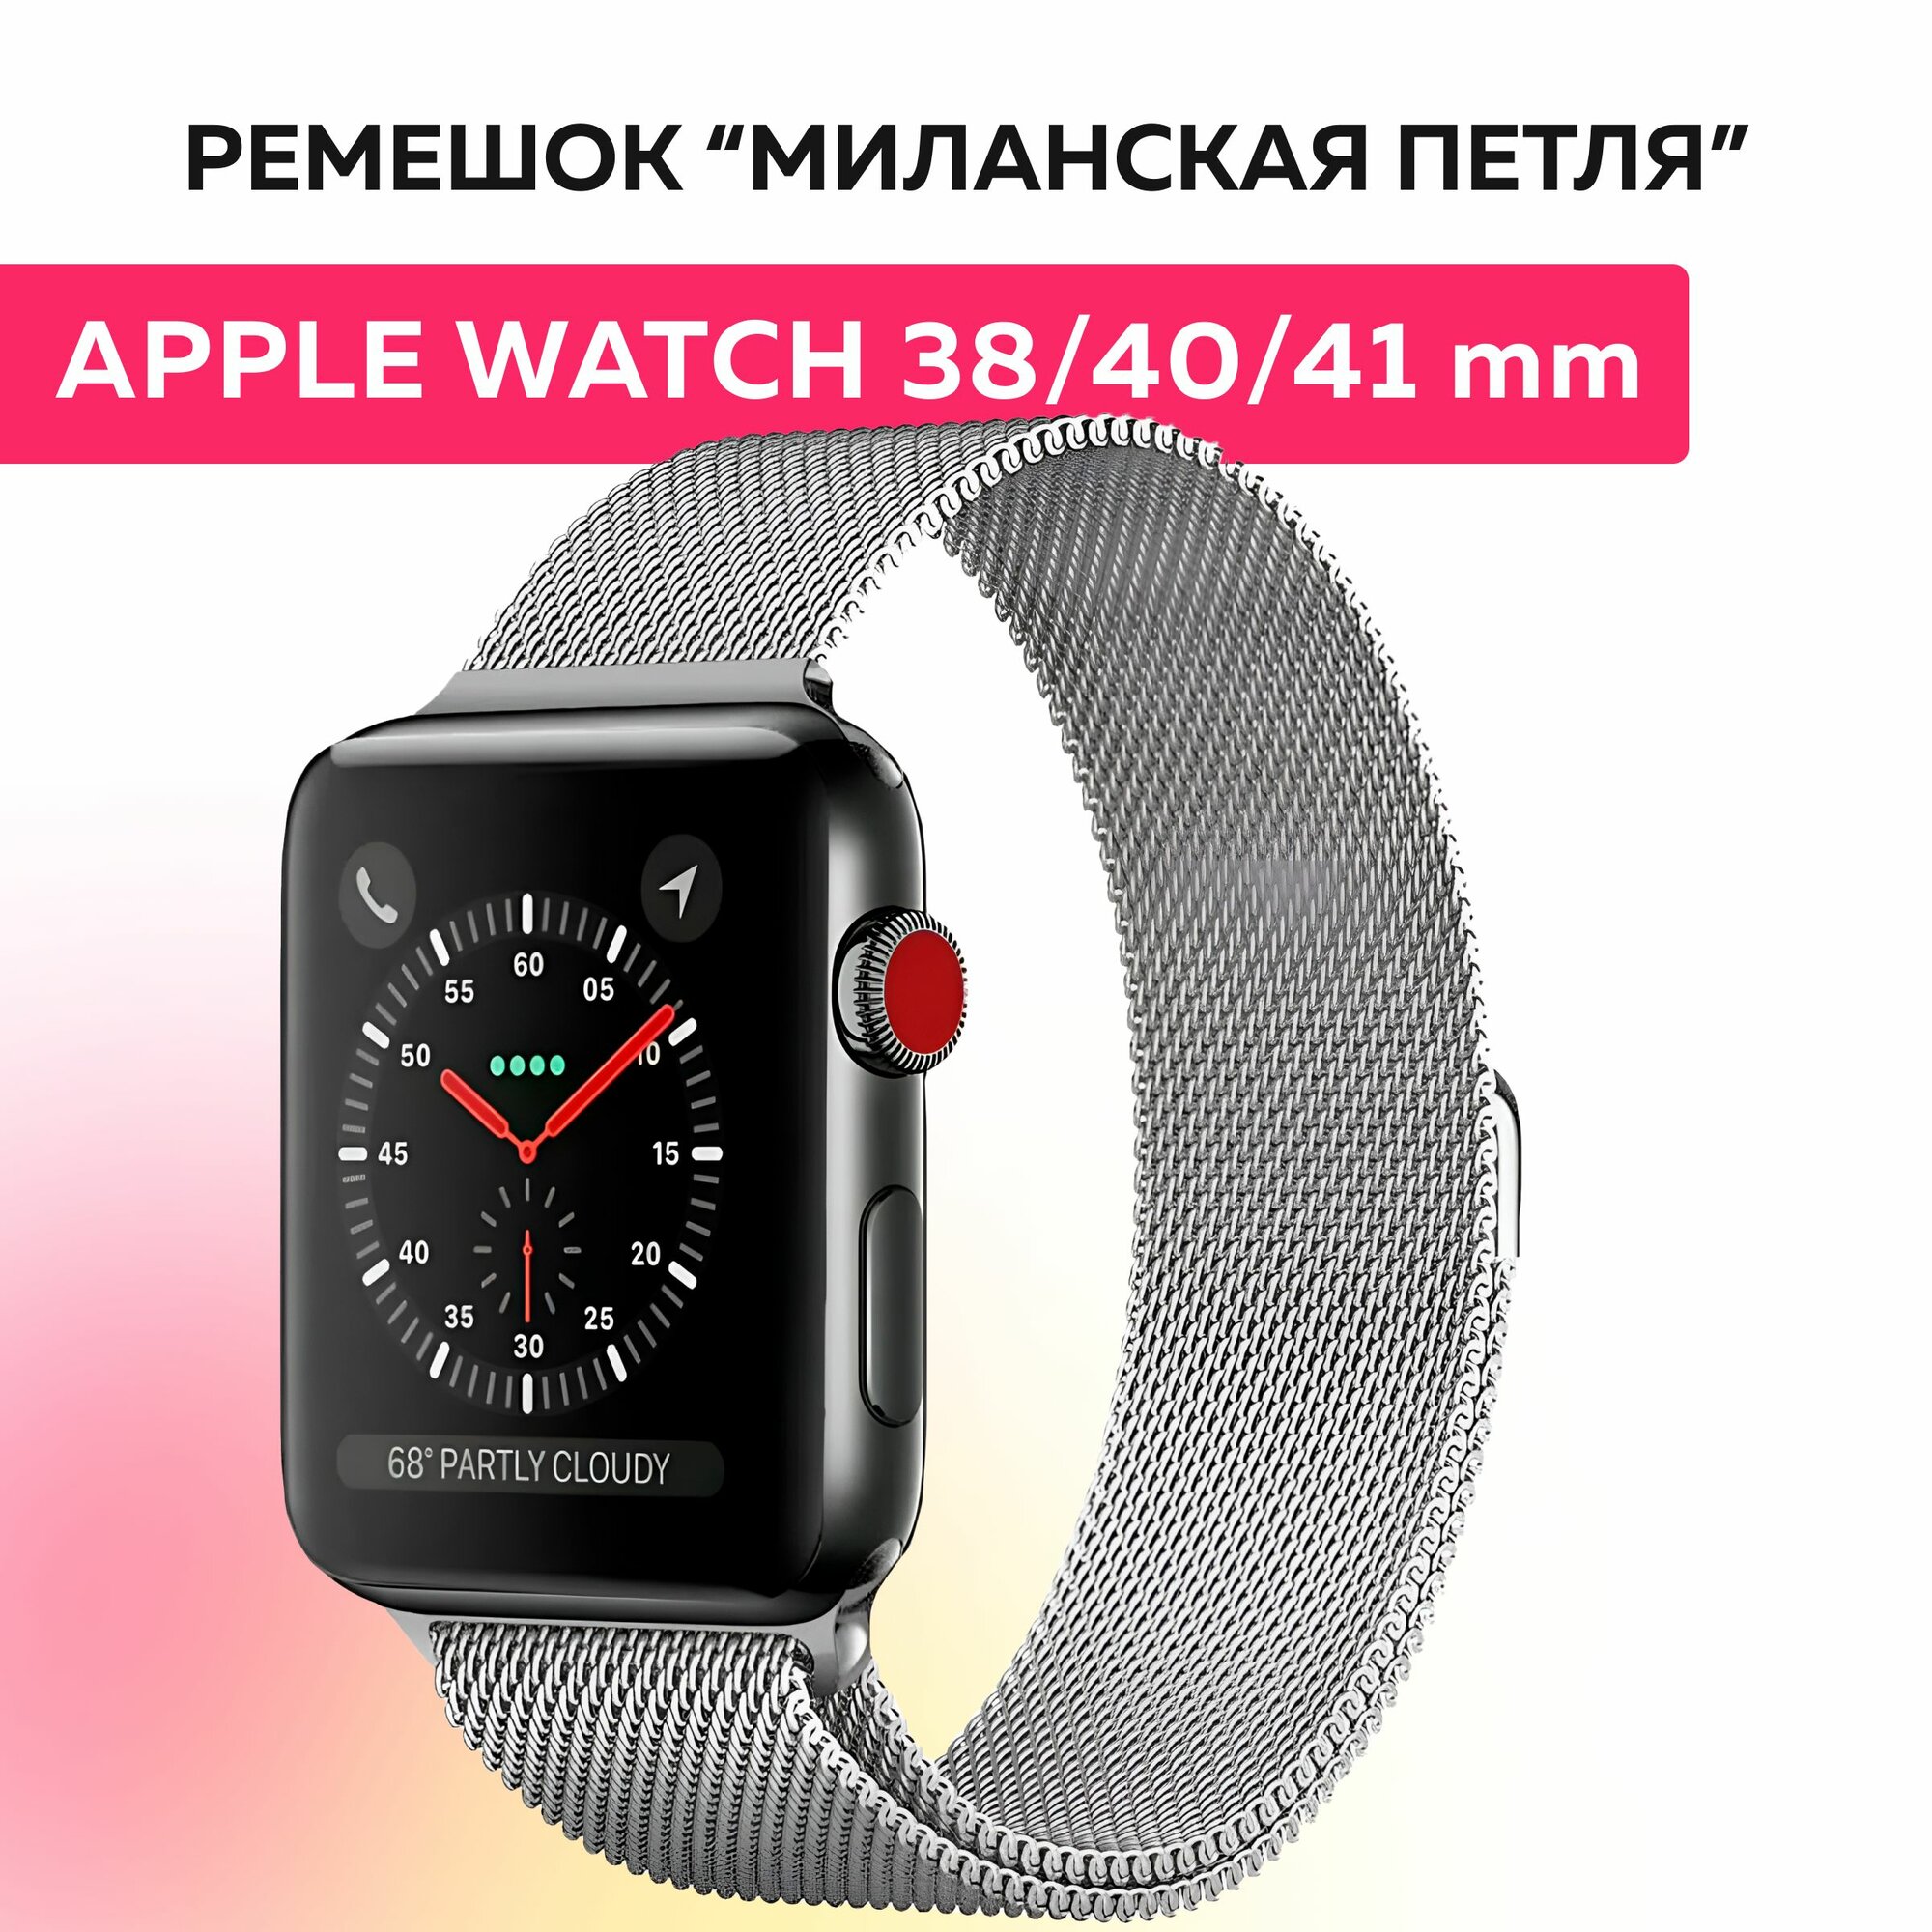 Ремешок "миланская петля" для Apple Watch браслет на умные часы эпл вотч 38 40 41 mm